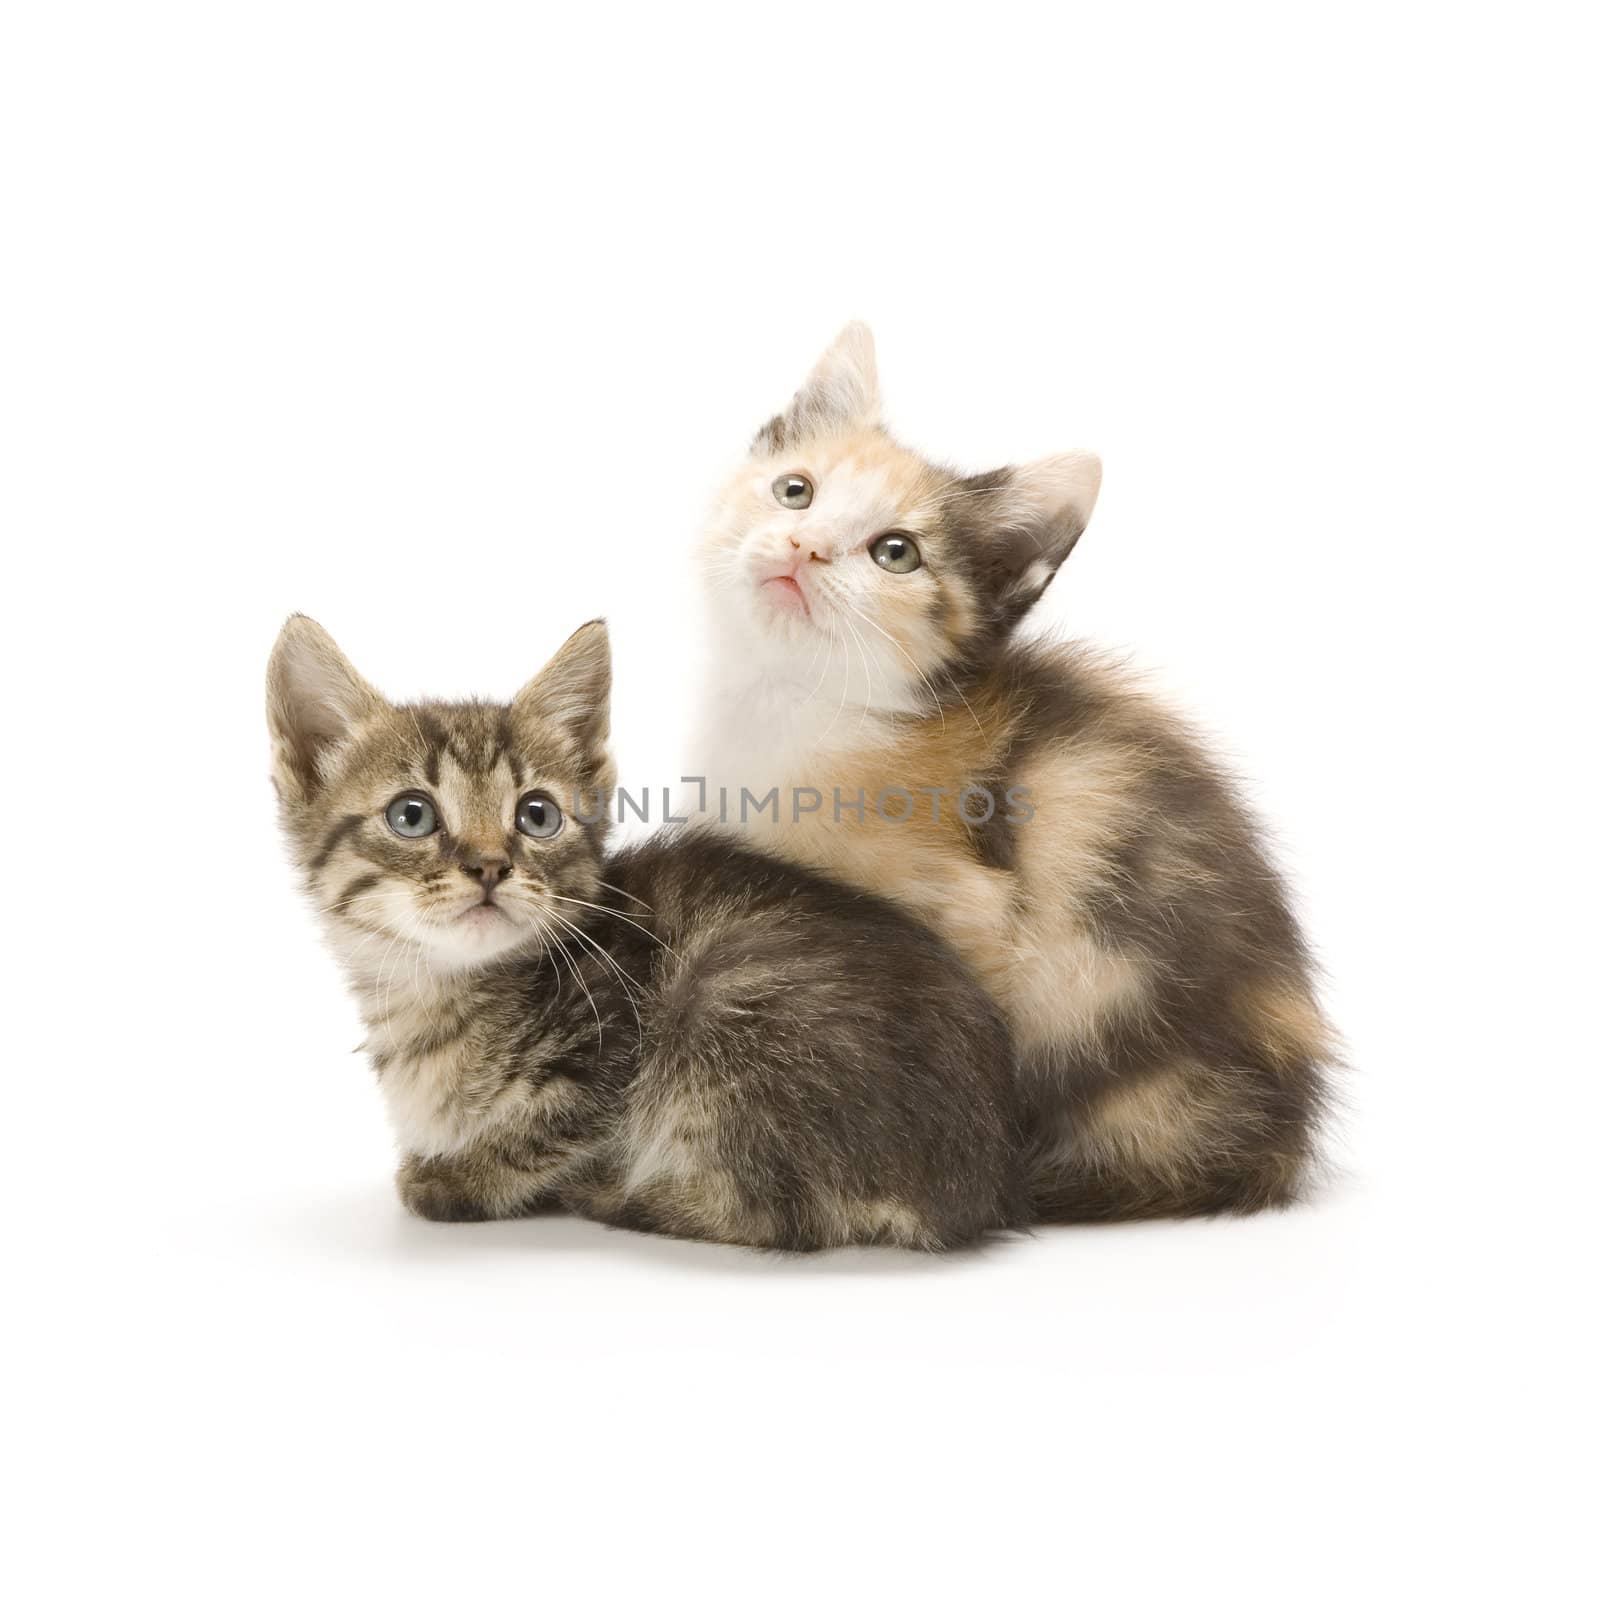 Kittens by stefan_andronache